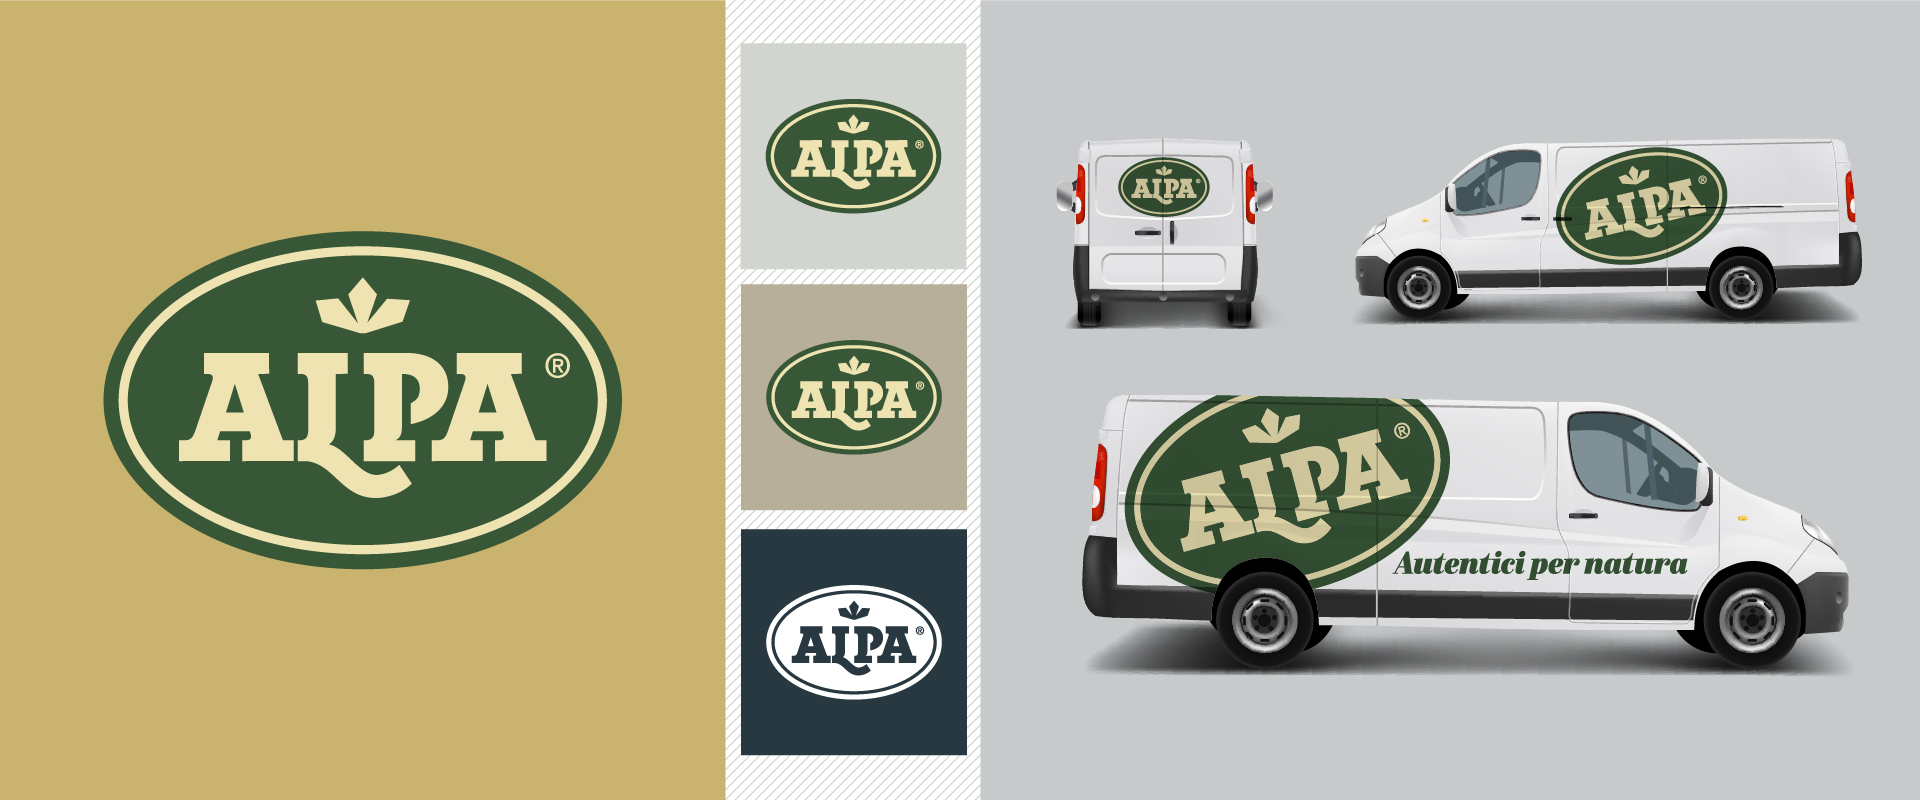 Corporate identity Alpa, logotype e personalizzazione veicolo aziendale